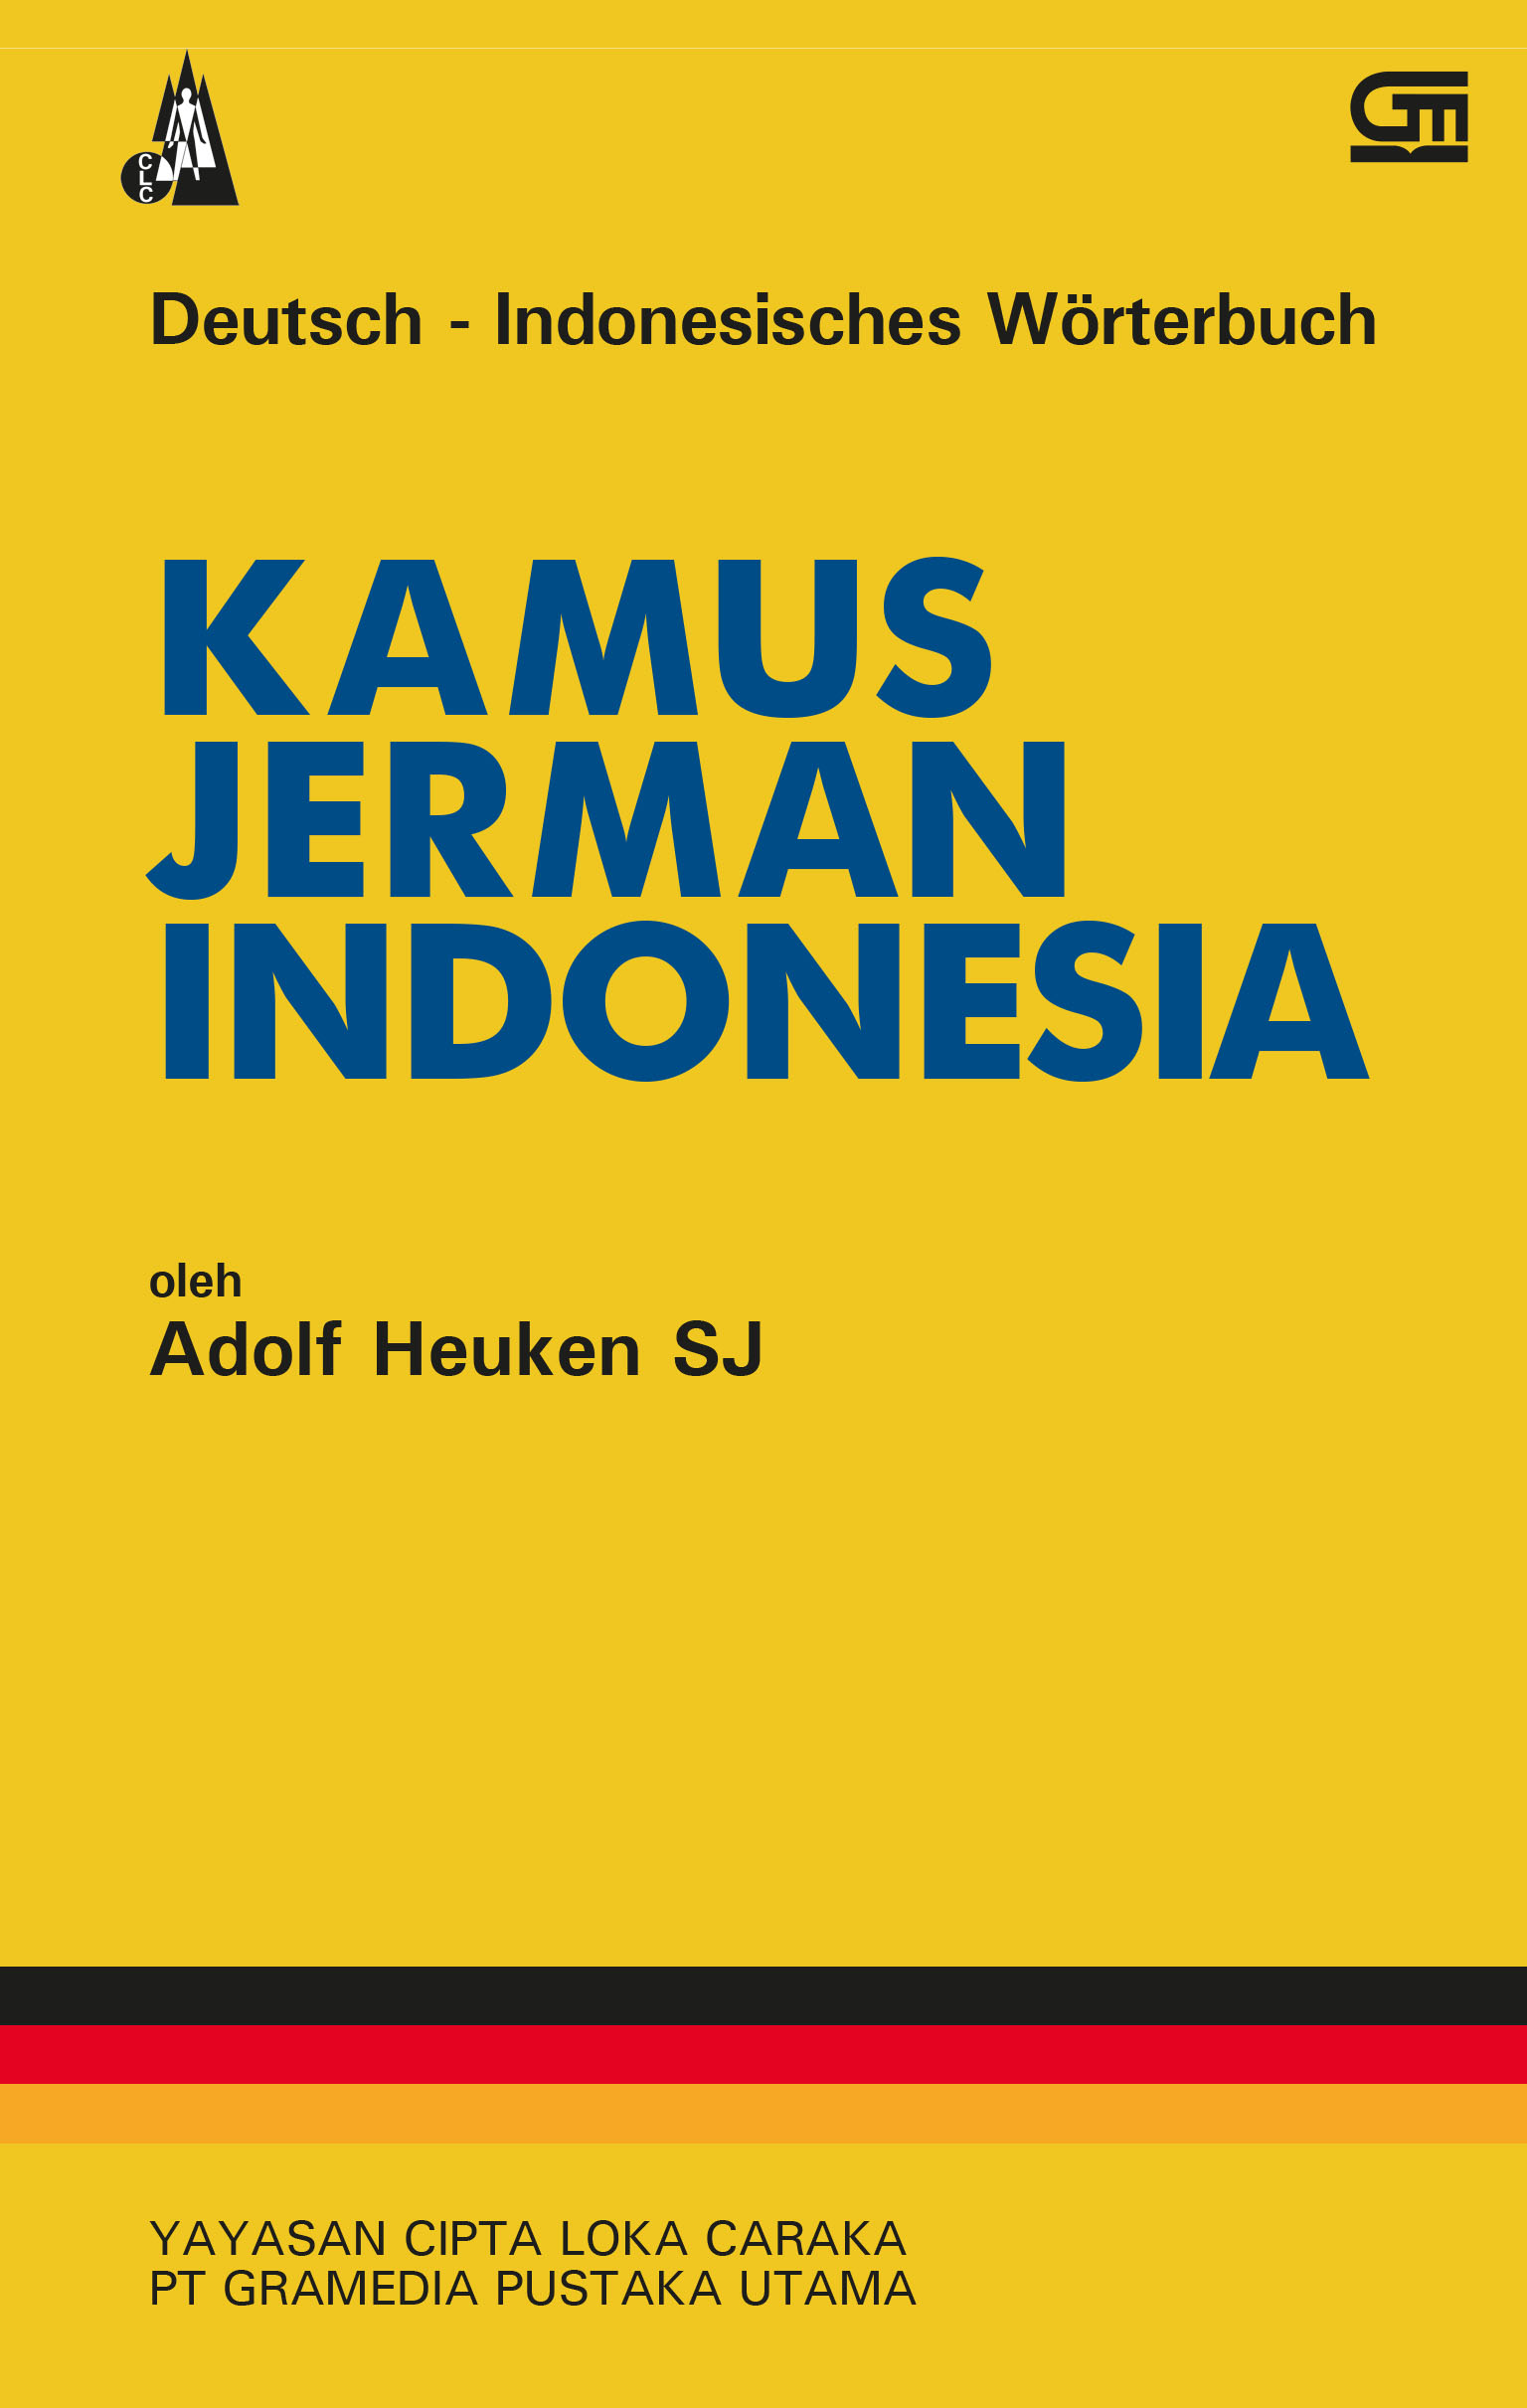 KAMUS JERMAN-INDONESIA (Deutsch–Indonesisches Wörterbuch)